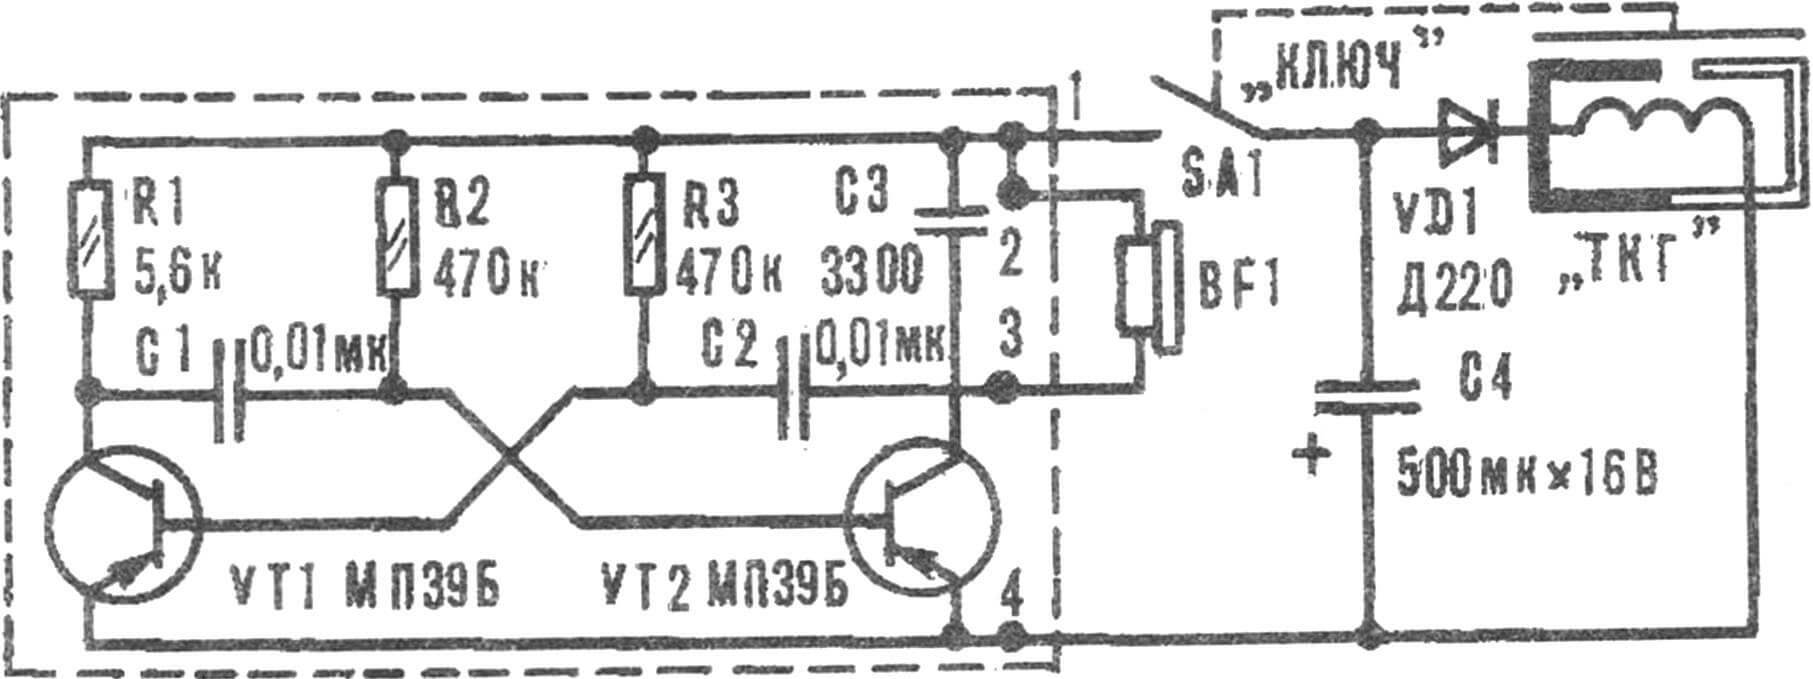 Рис. 5. Принципиальная электрическая схема устройства для изучения кода Морзе с питанием от ручного привода.